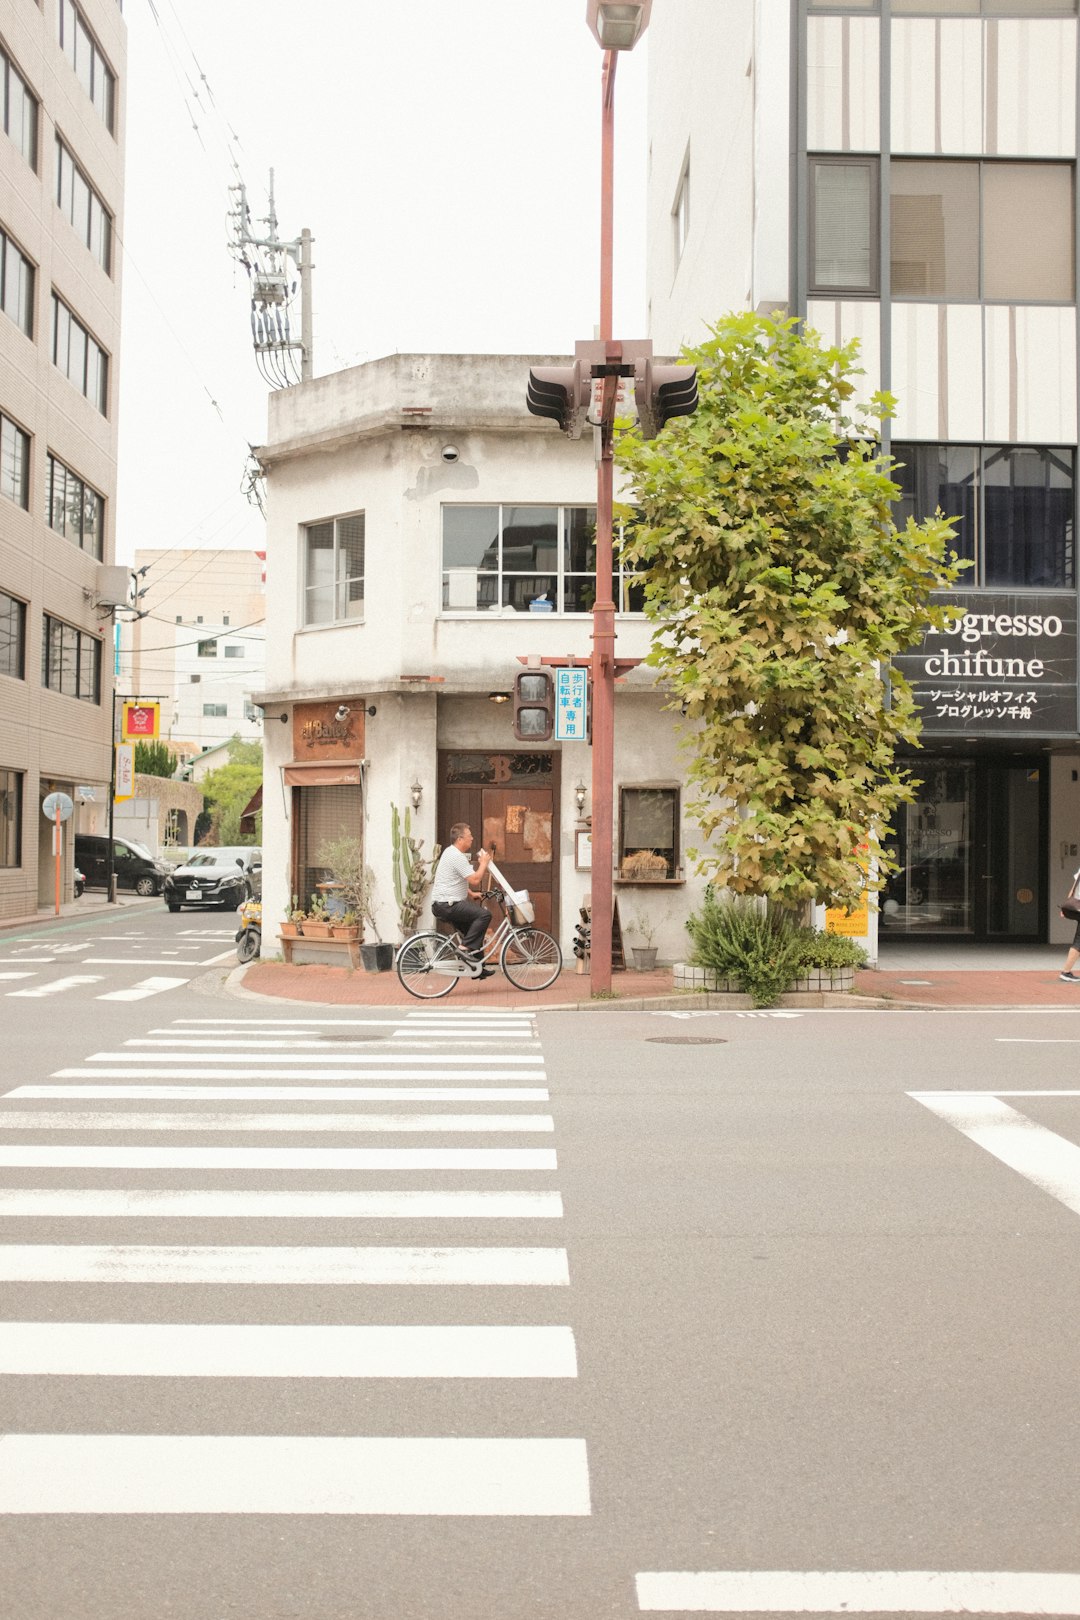 man in black jacket riding bicycle on pedestrian lane during daytime